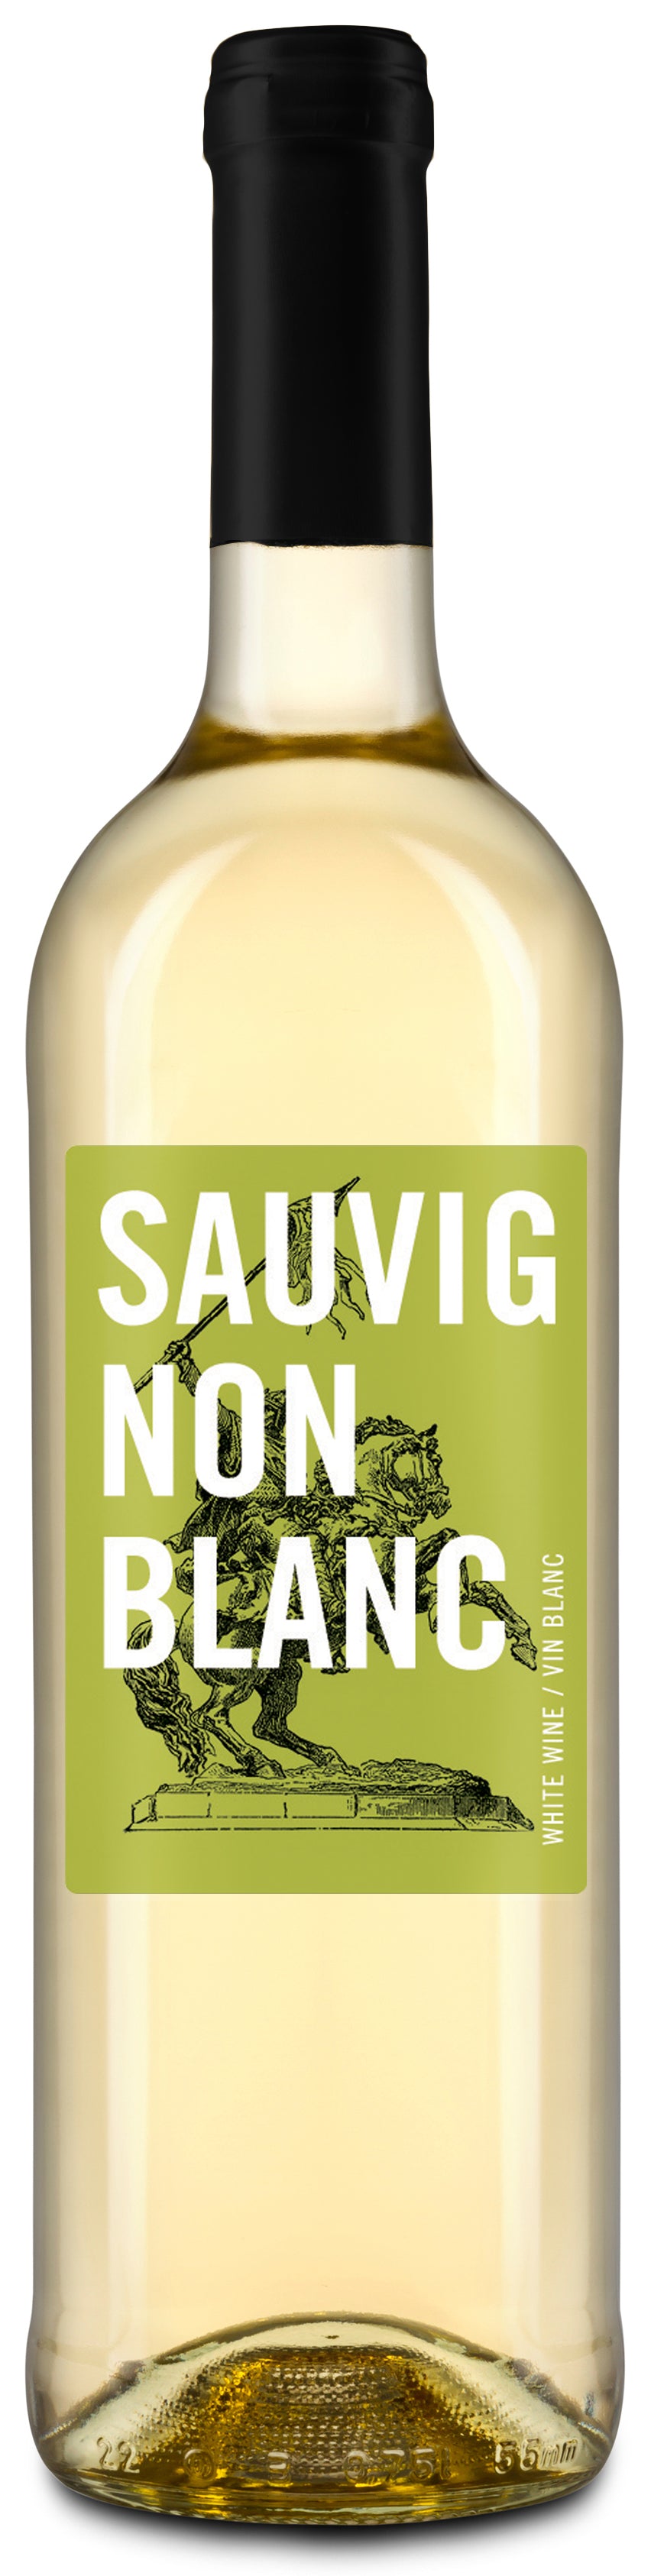 Labels - Sauvignon Blanc - GVI - The Wine Warehouse CA